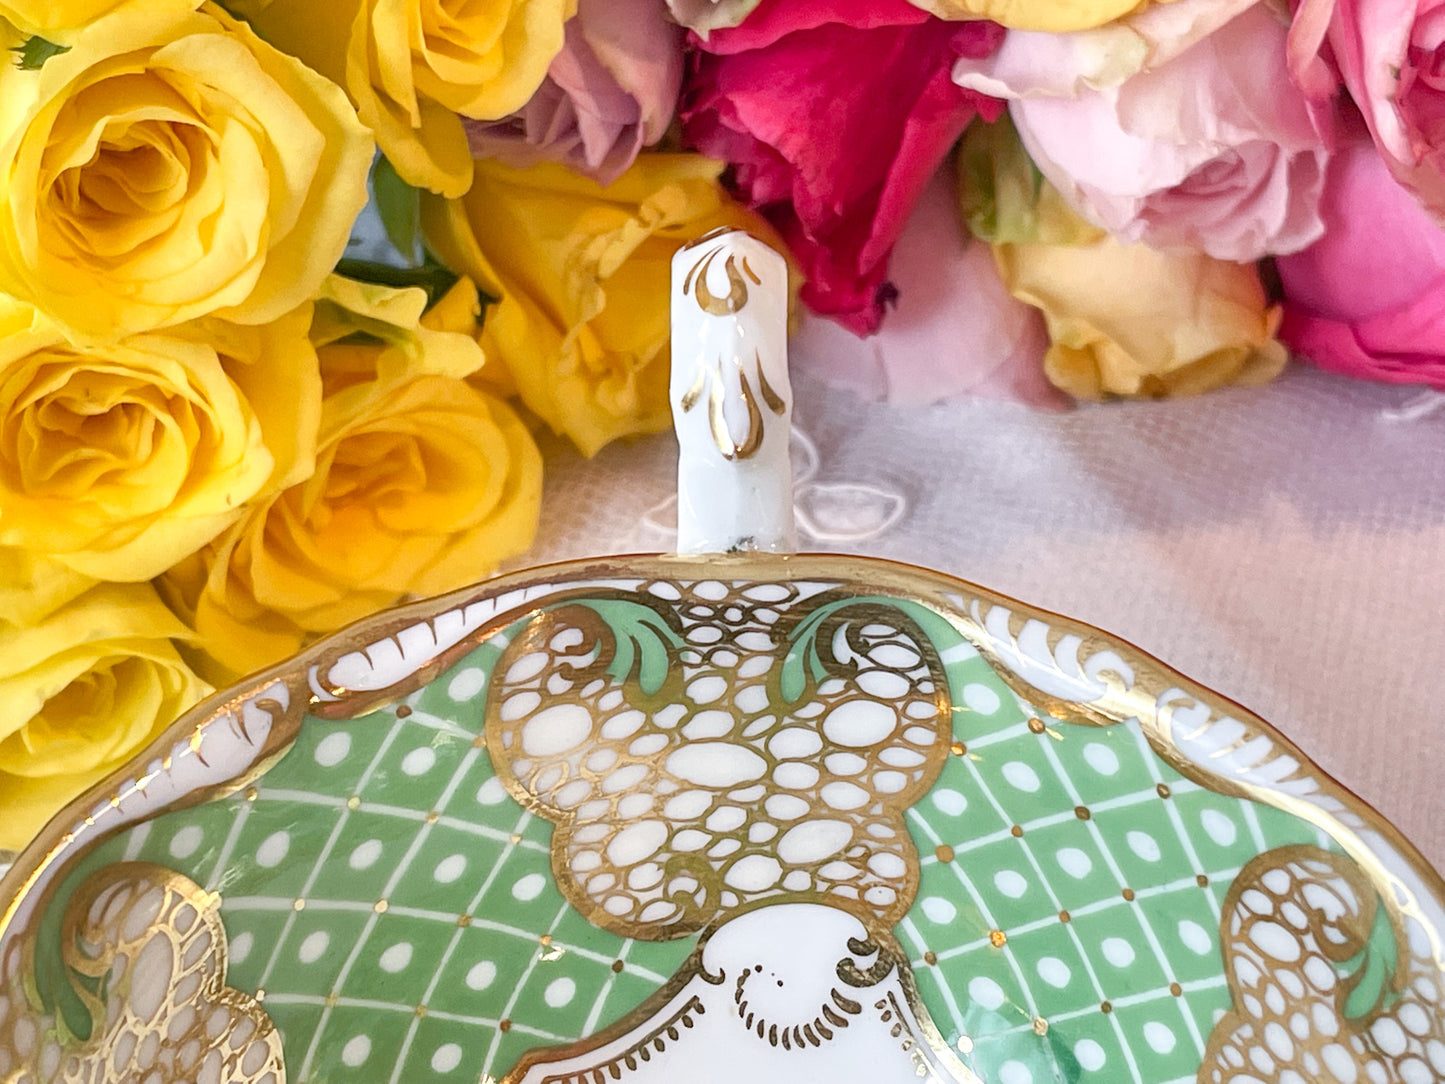 ダベンポートの美しいカップ&ソーサー。グリーンカラーと金彩の細かな模様がとても美しいです。Rose Antiquesは英国アンティーク、ヴィンテージ食器をご紹介しています。